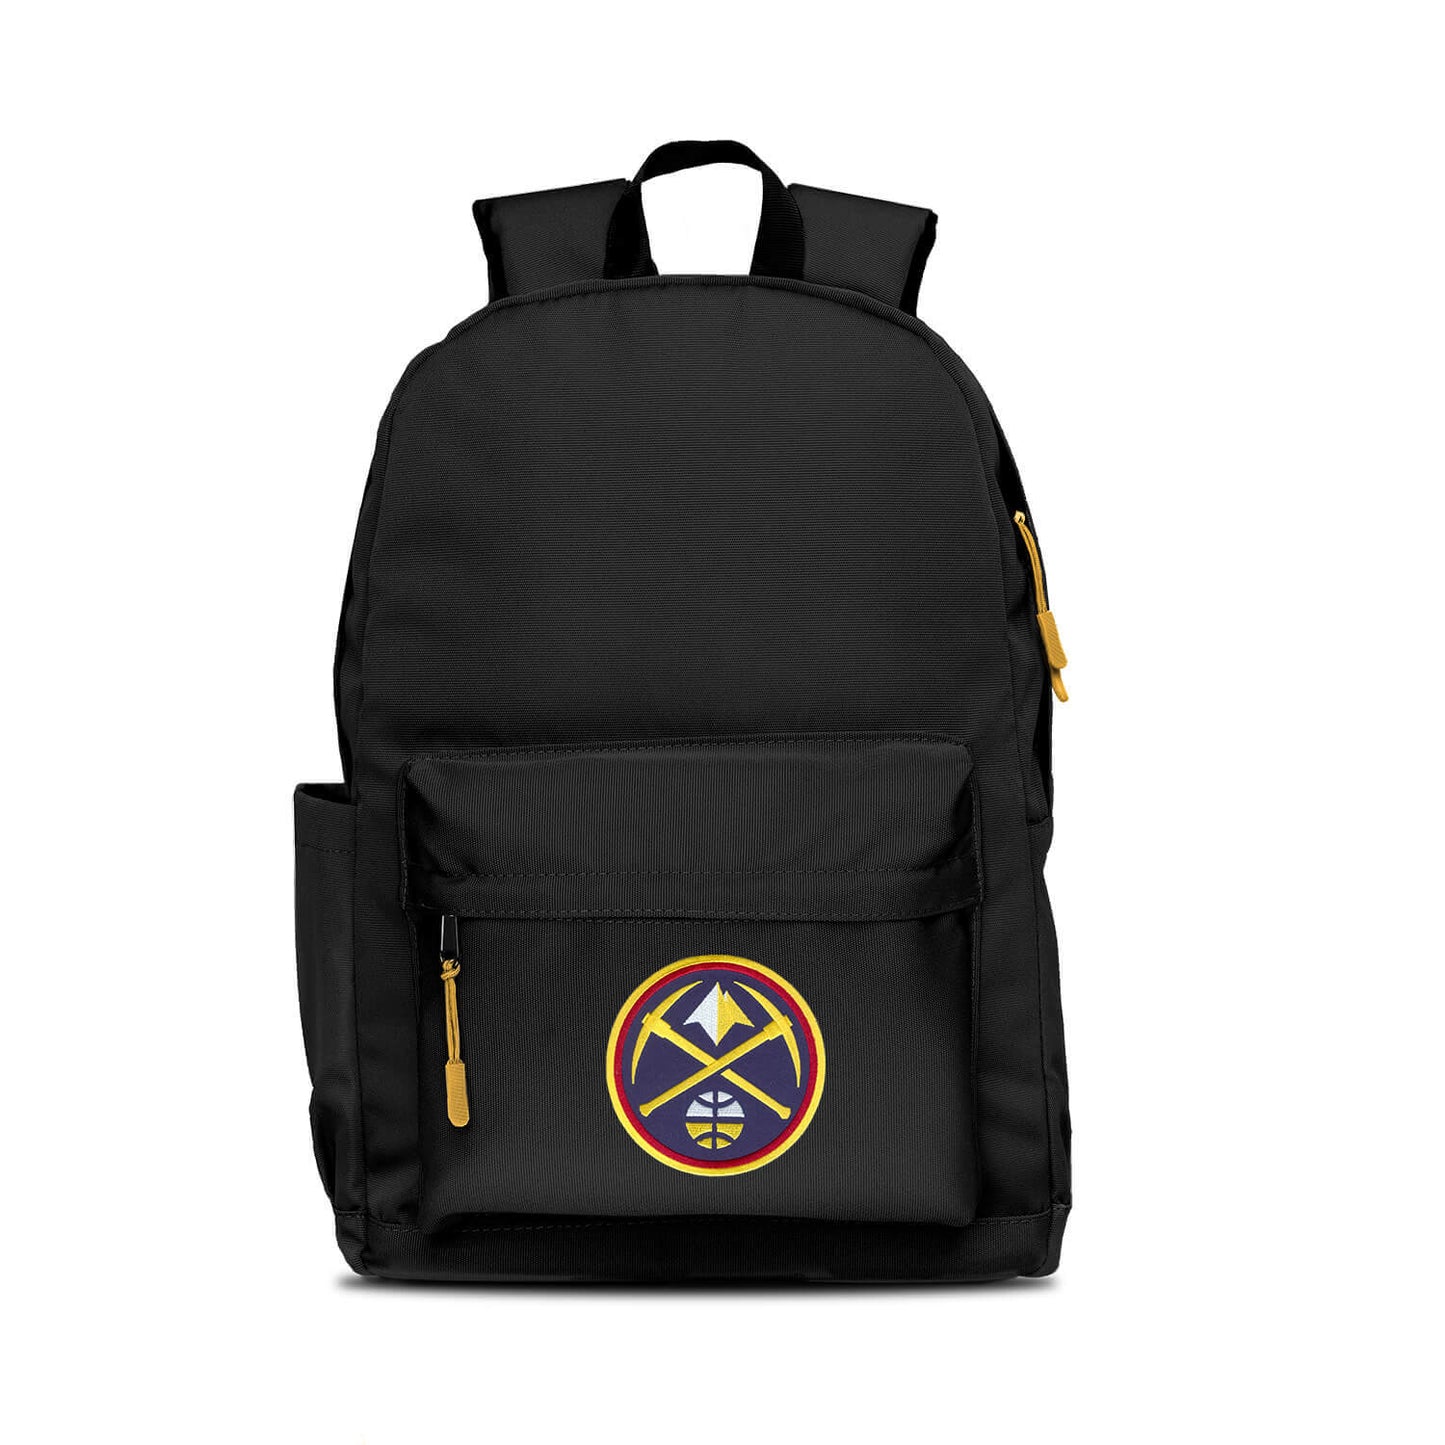 Denver Nuggets Campus Laptop Backpack - Black